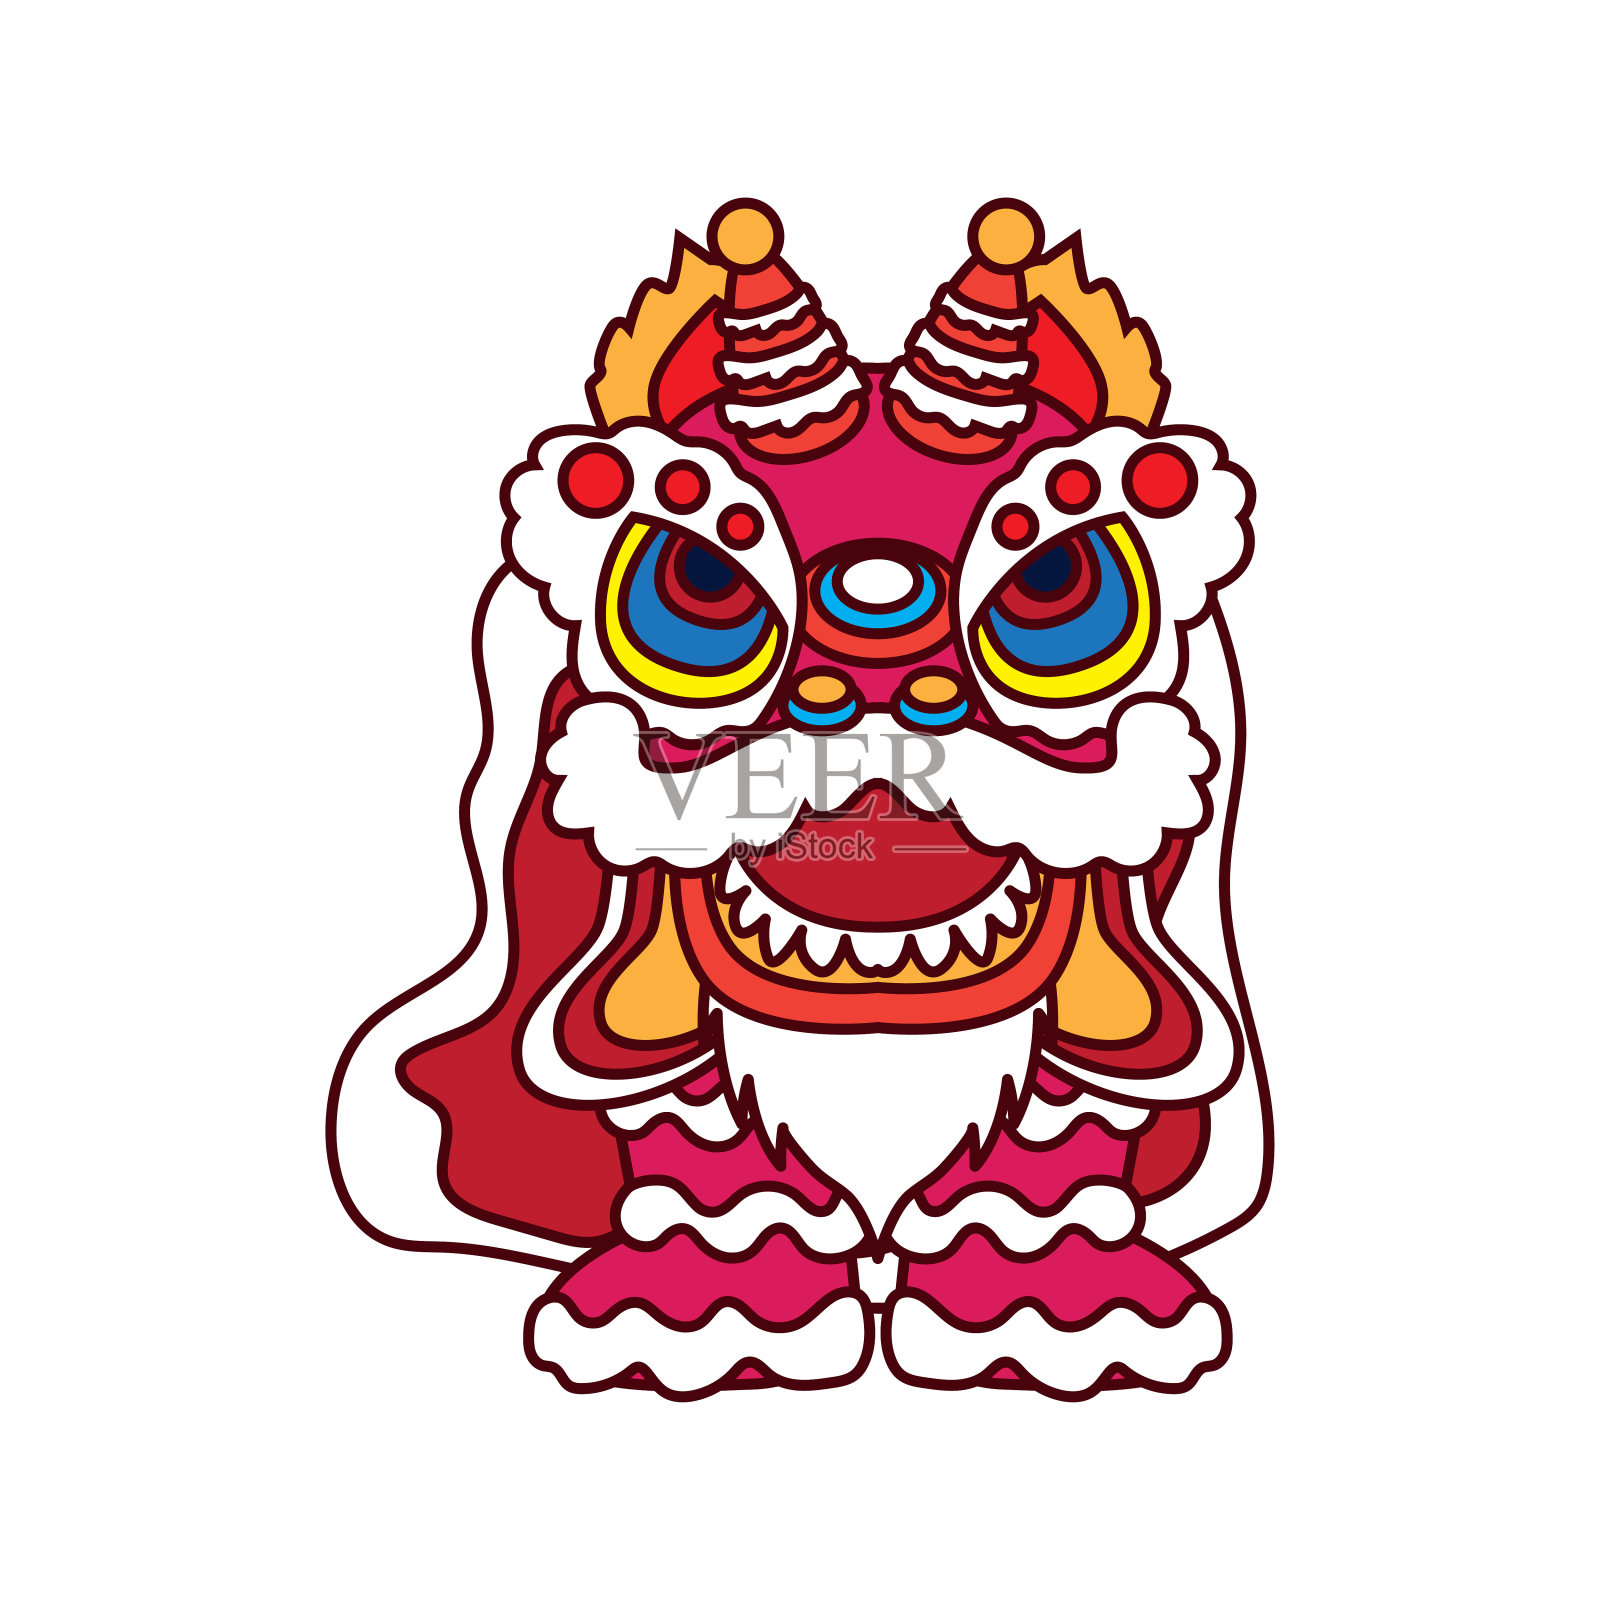 舞狮是中国新年的节日。矢量图设计元素图片